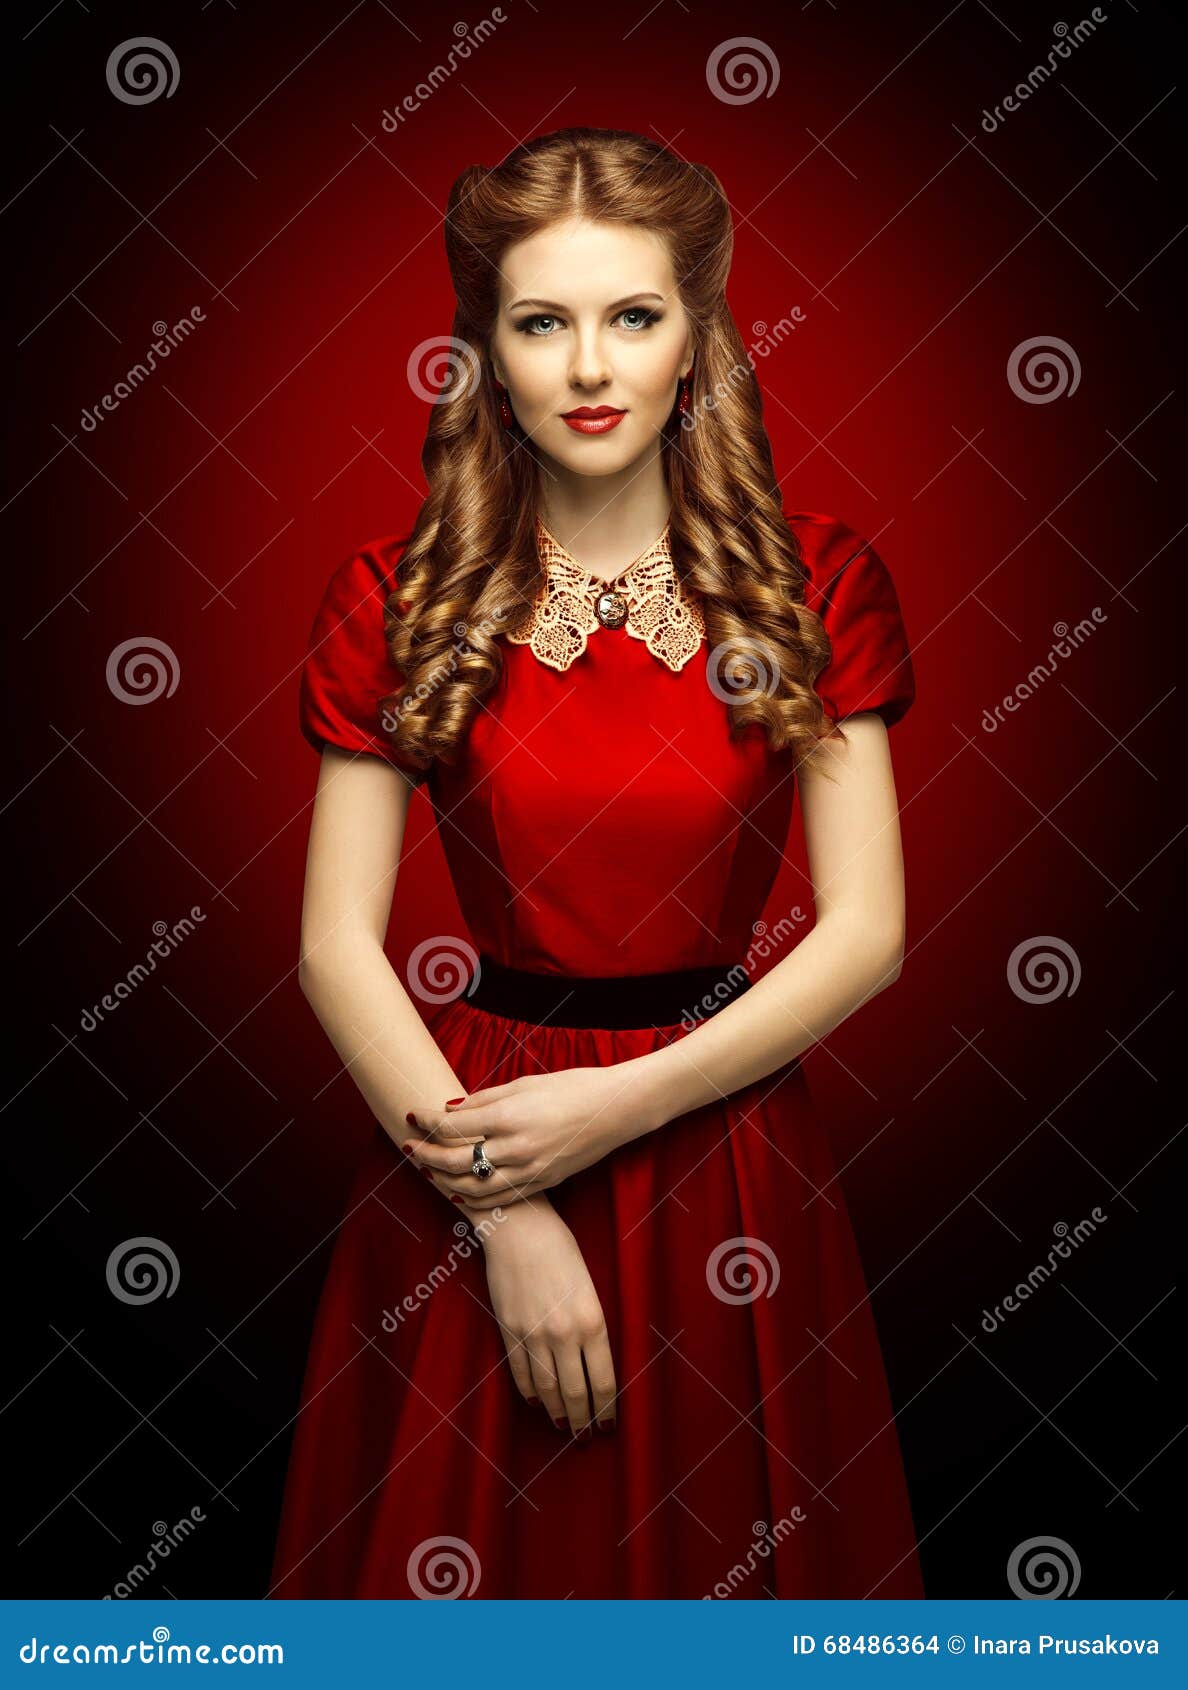 lanzar ocupado medios de comunicación Vestido Rojo De La Mujer, Modelo De Moda En Cuello Retro Del Cordón De La  Ropa Foto de archivo - Imagen de retrato, pelo: 68486364